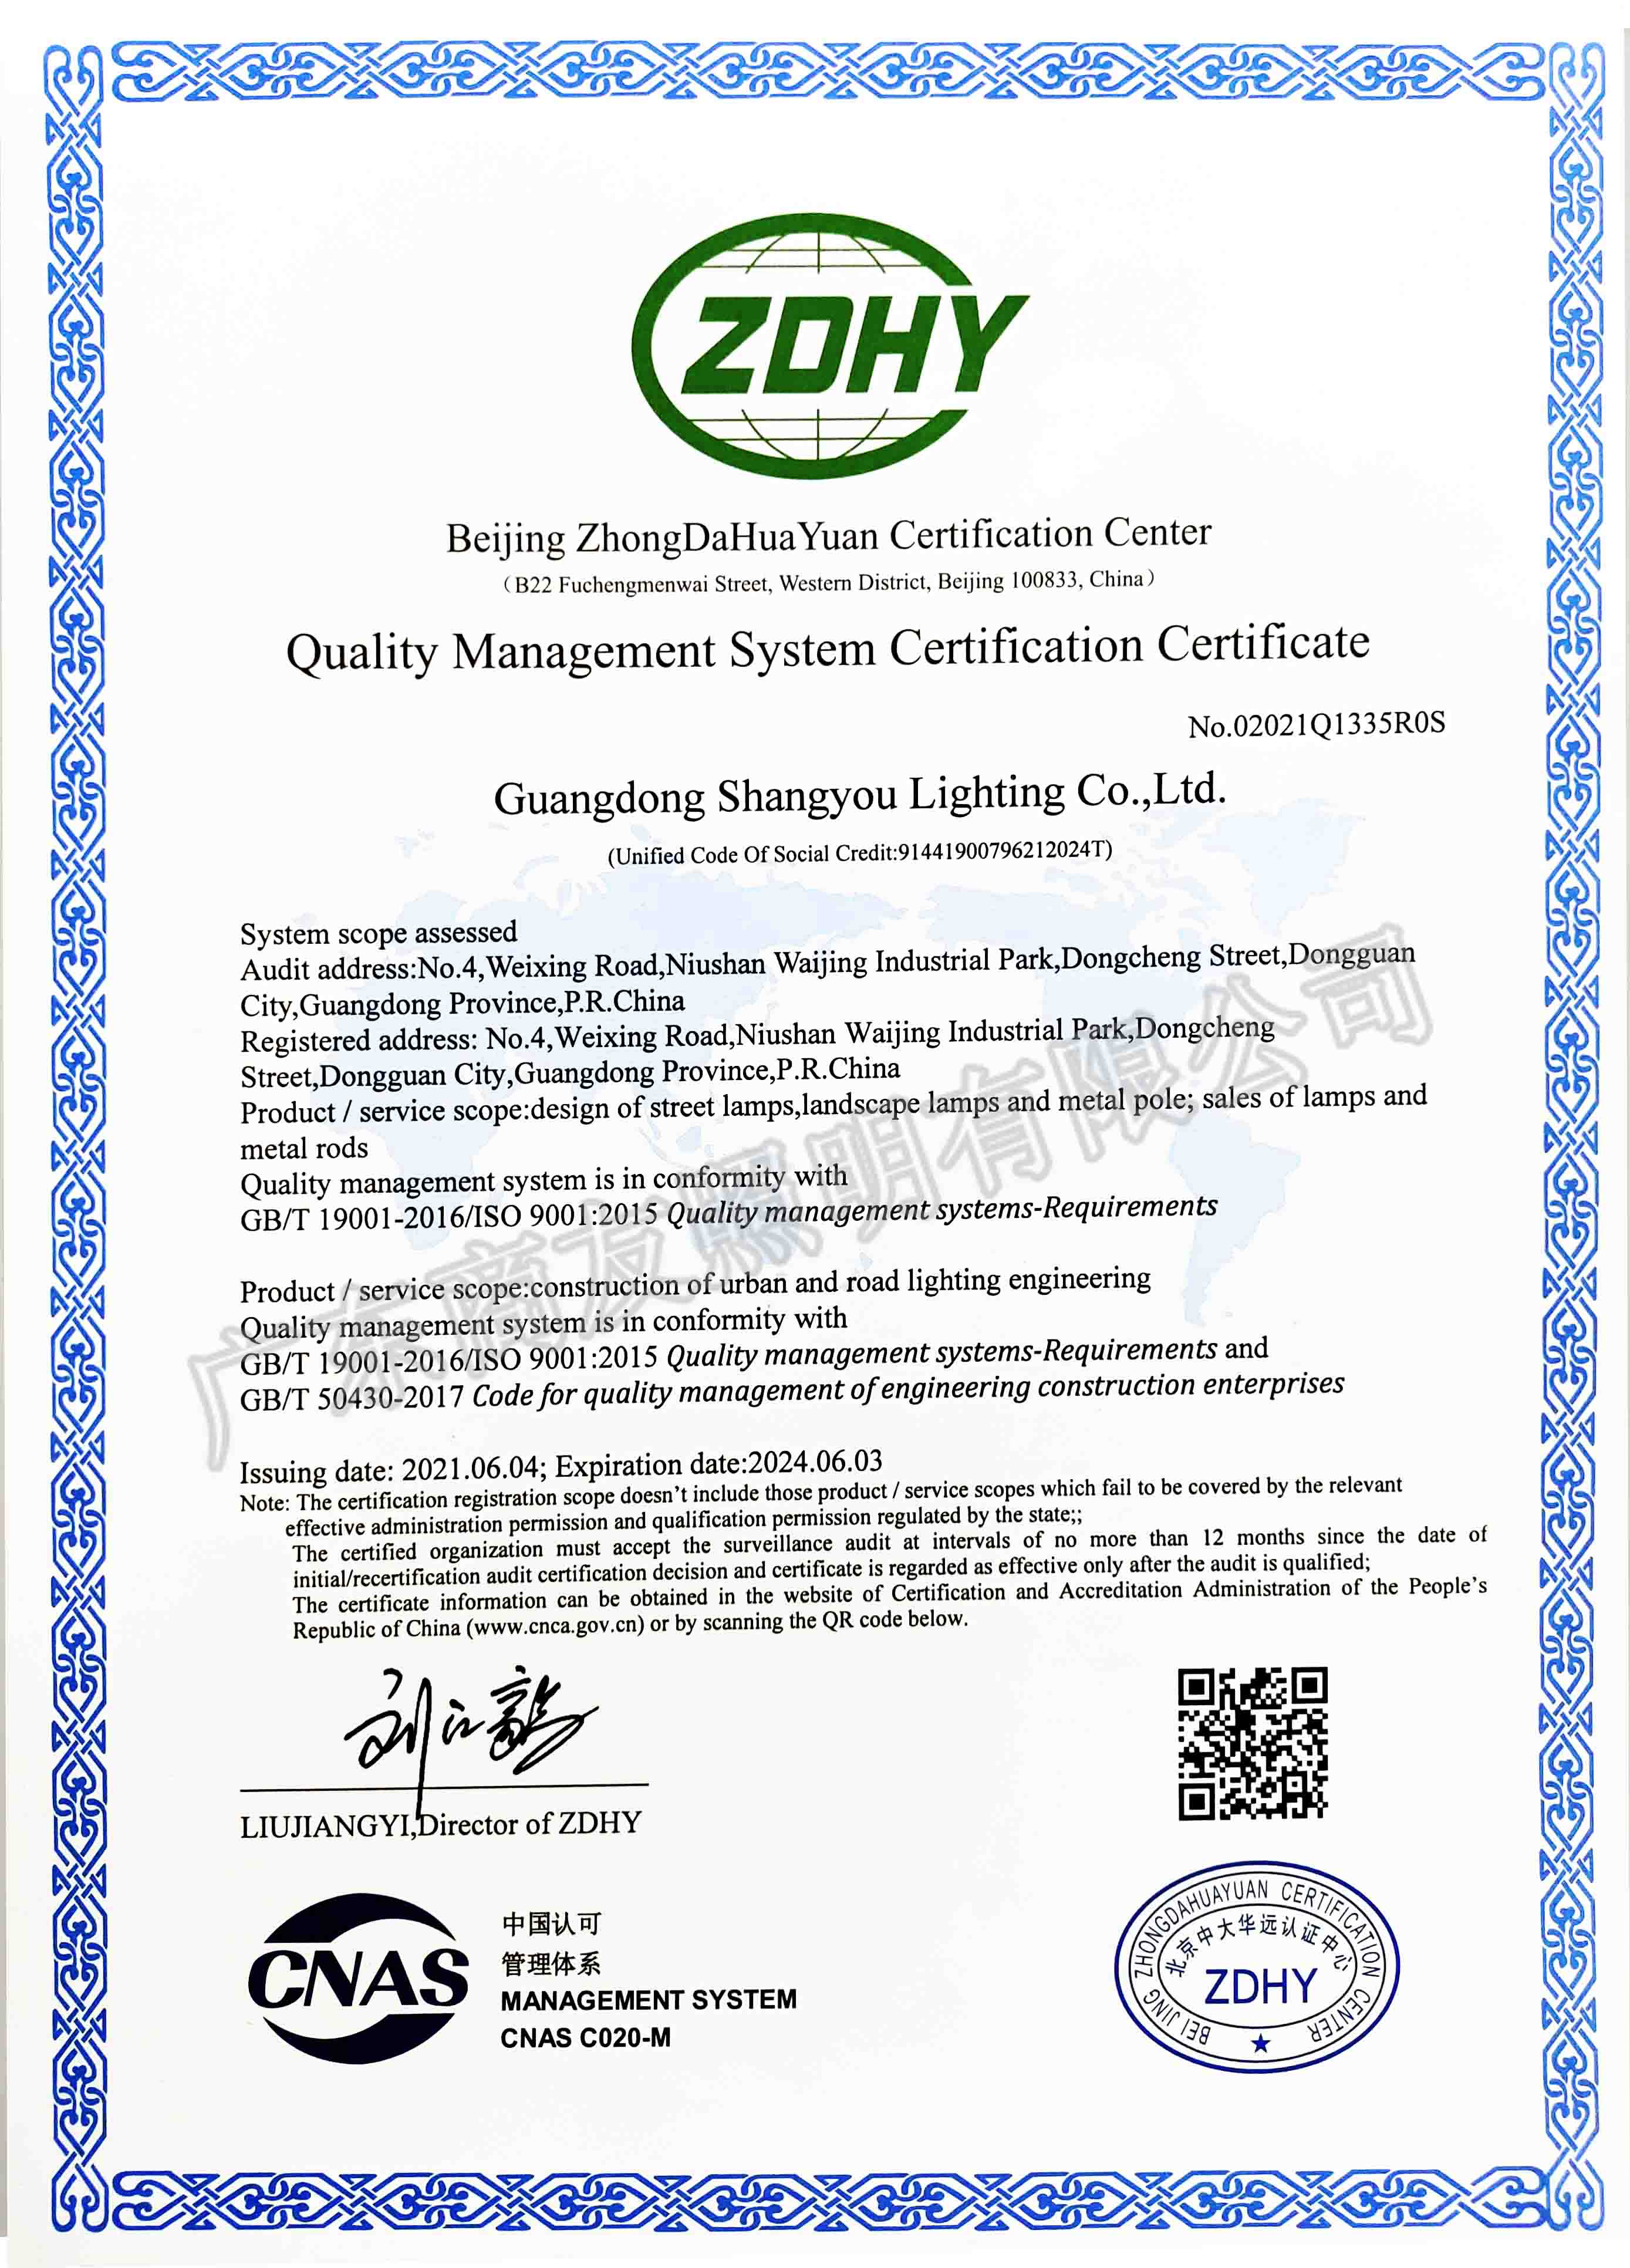 ISO 9001質量管理體系認證證書(英文版)